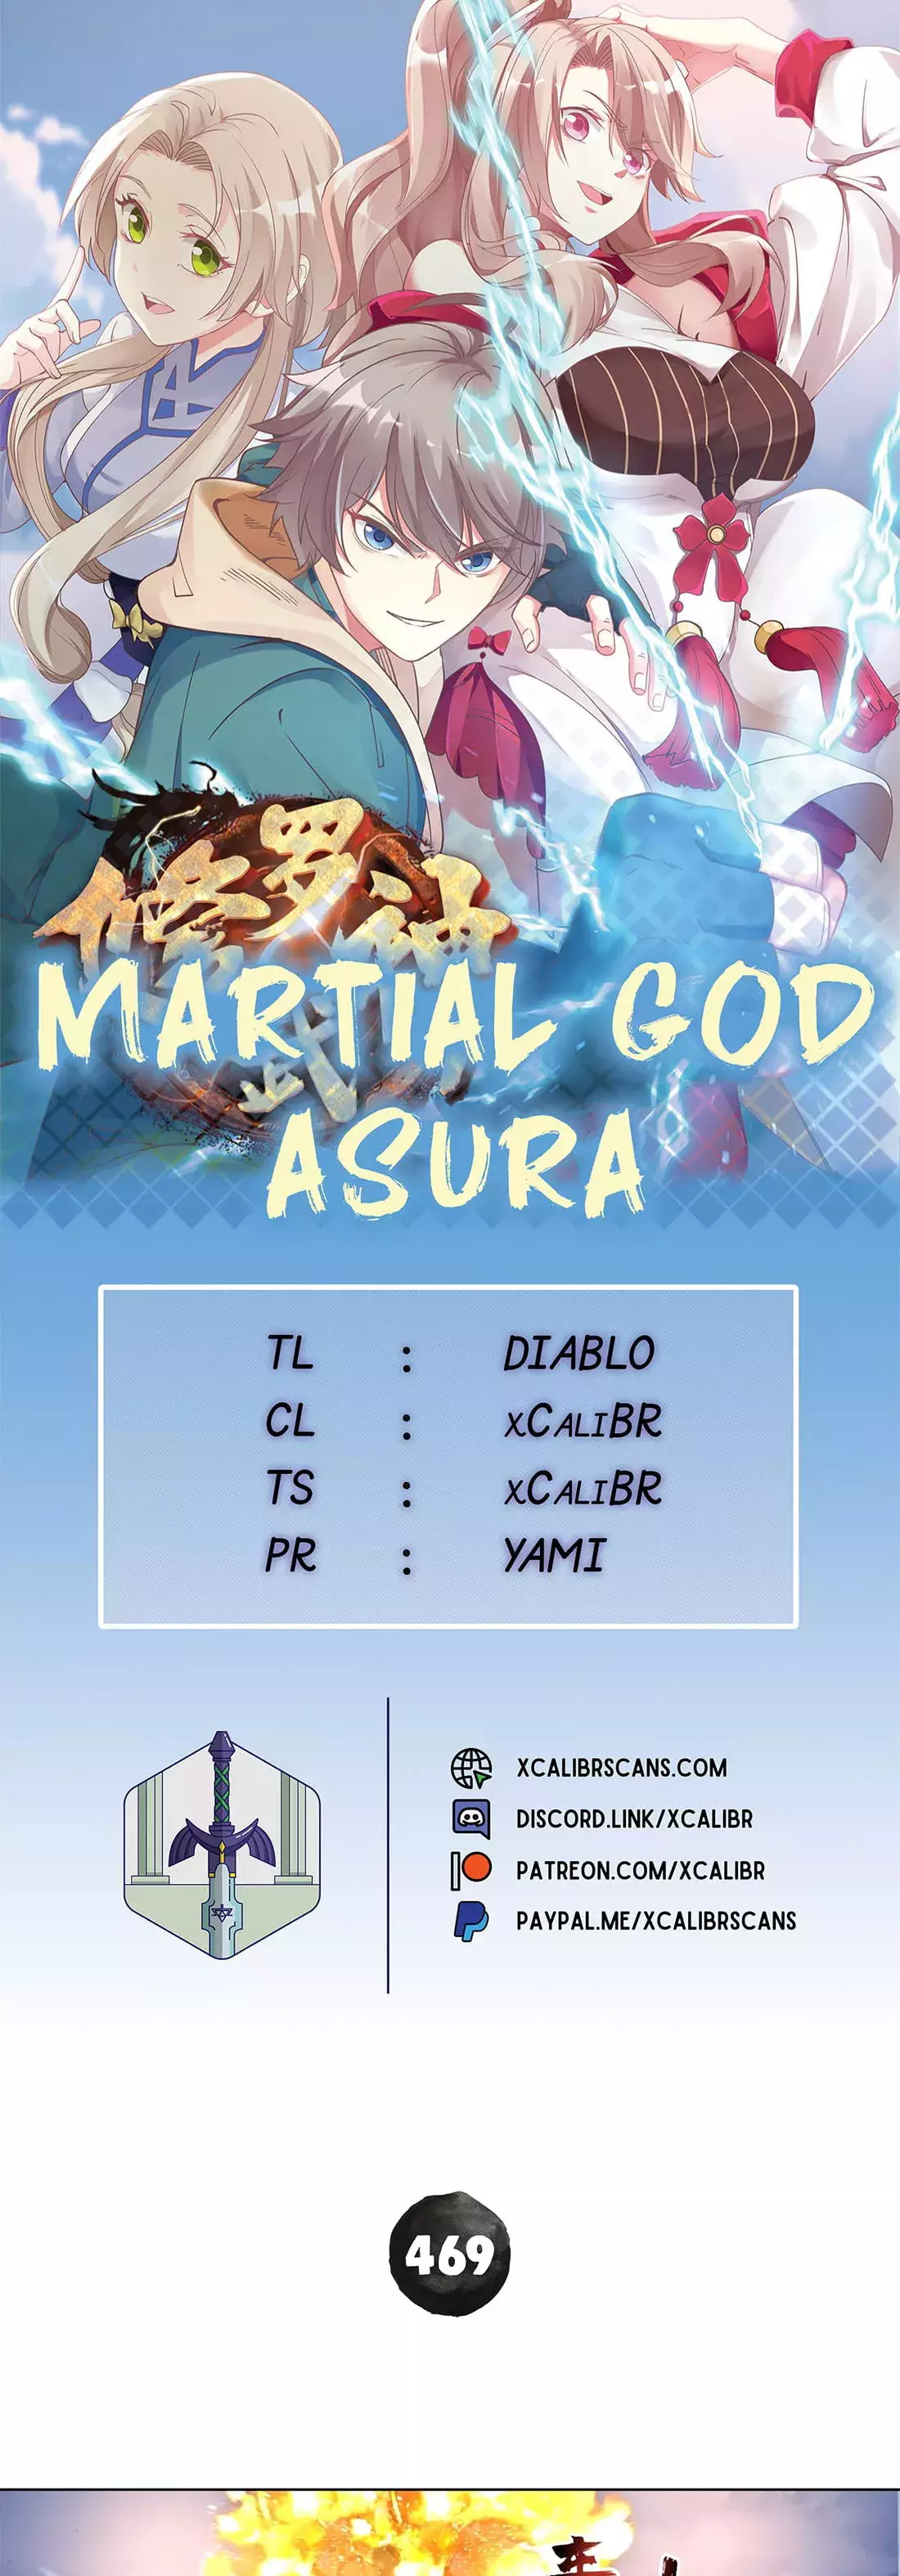 Martial God Asura - 469 page 1-99f4e550